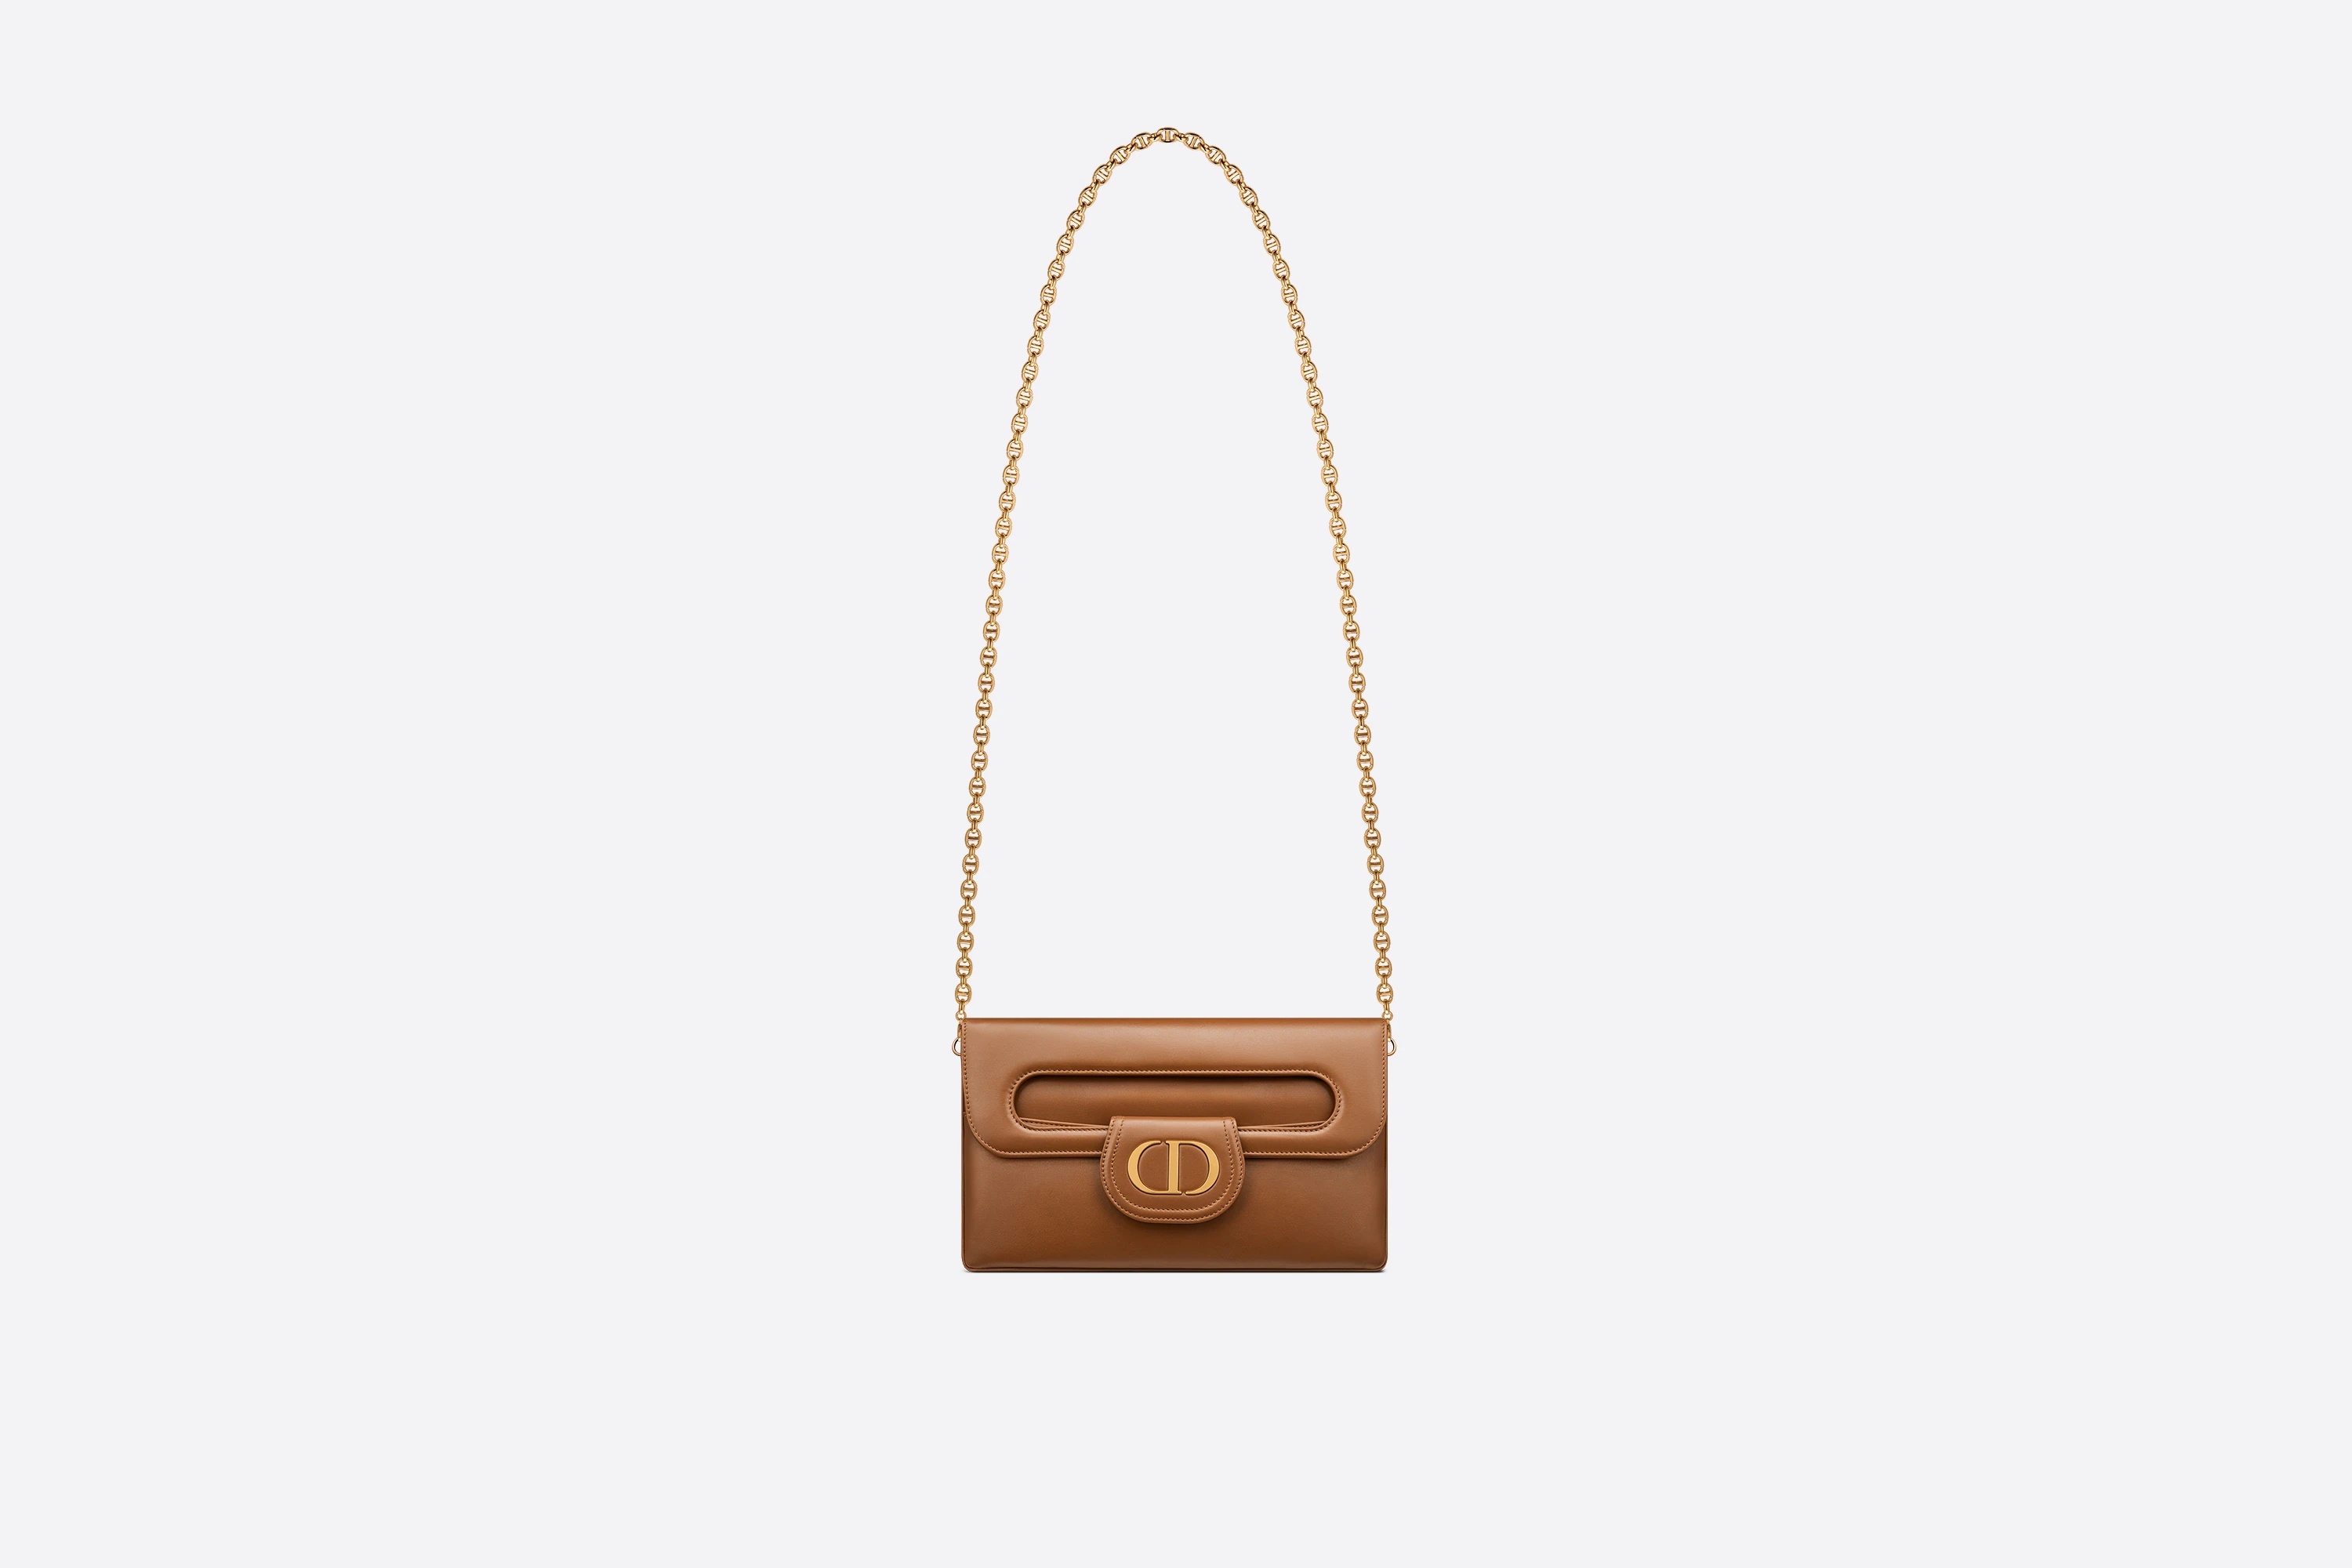 Medium DiorDouble Bag - 4